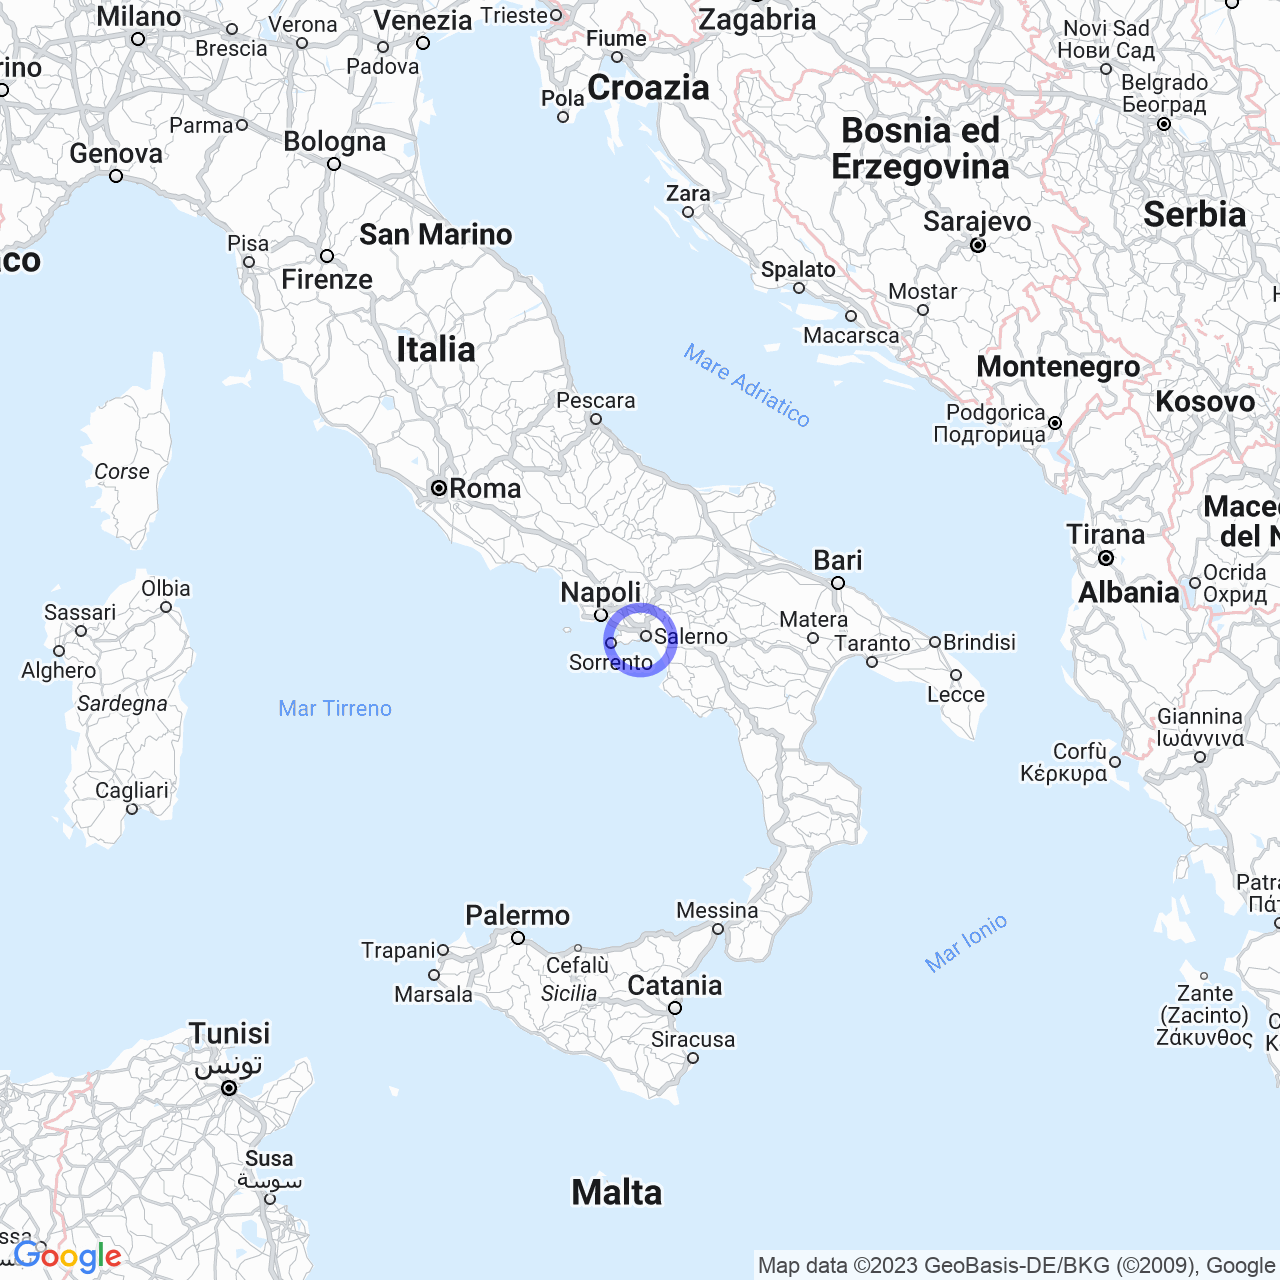 Cetara: history, flavors, and crystalline sea of the Amalfi Coast.